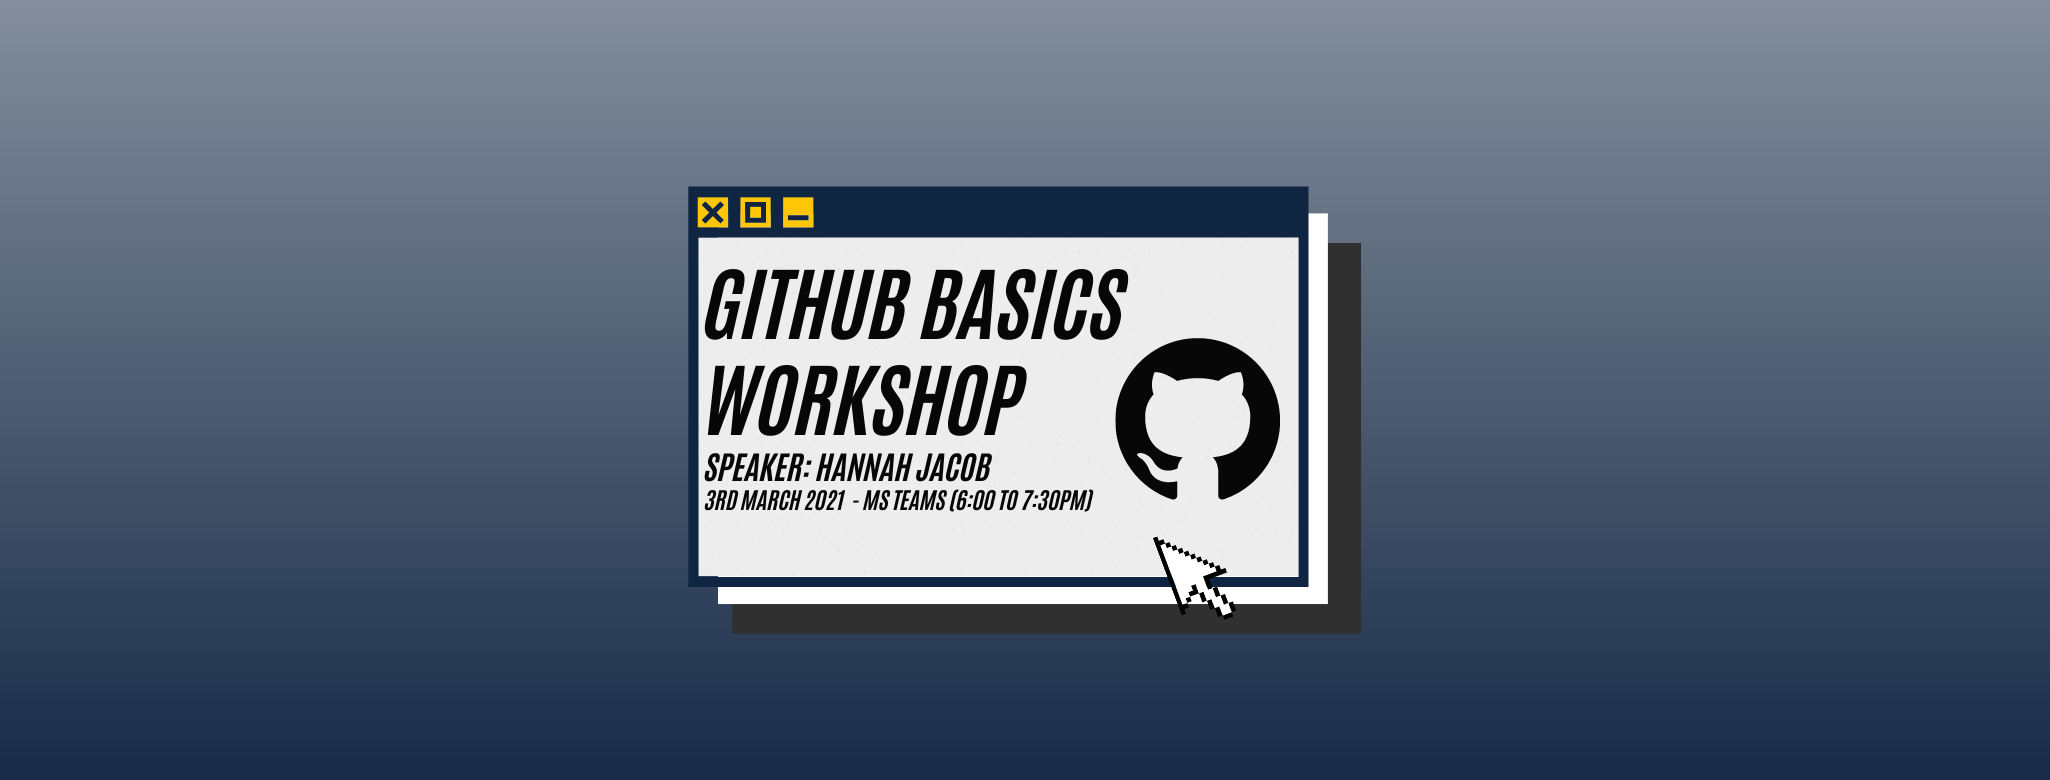 GitHub Basics Workshop Header